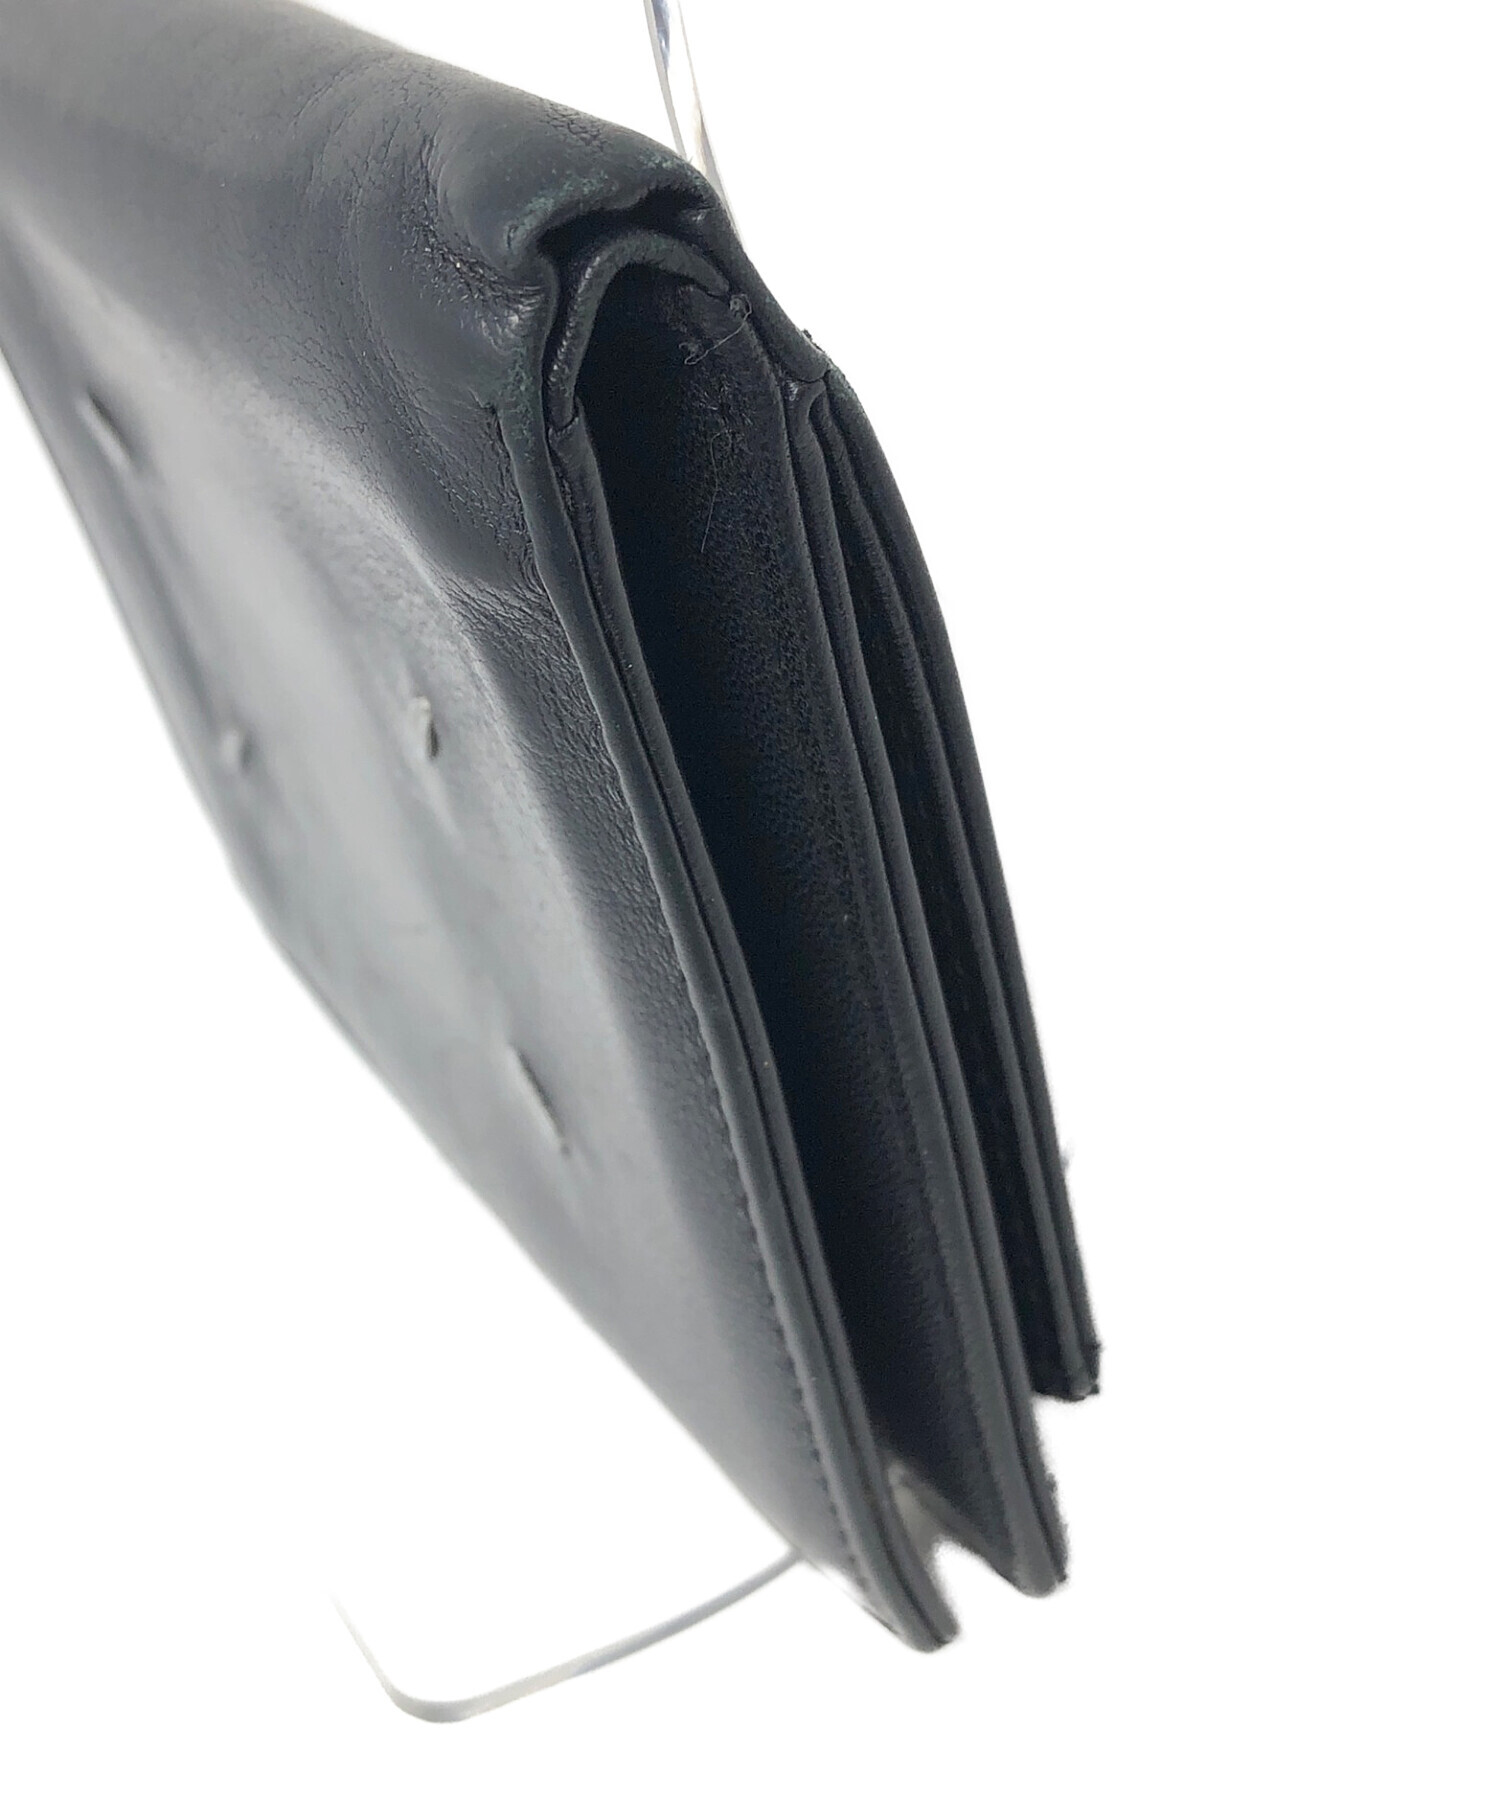 Martin Margiela11 (マルタンマルジェラ11) 2つ折り財布 ブラック サイズ:実寸サイズにてご確認ください。